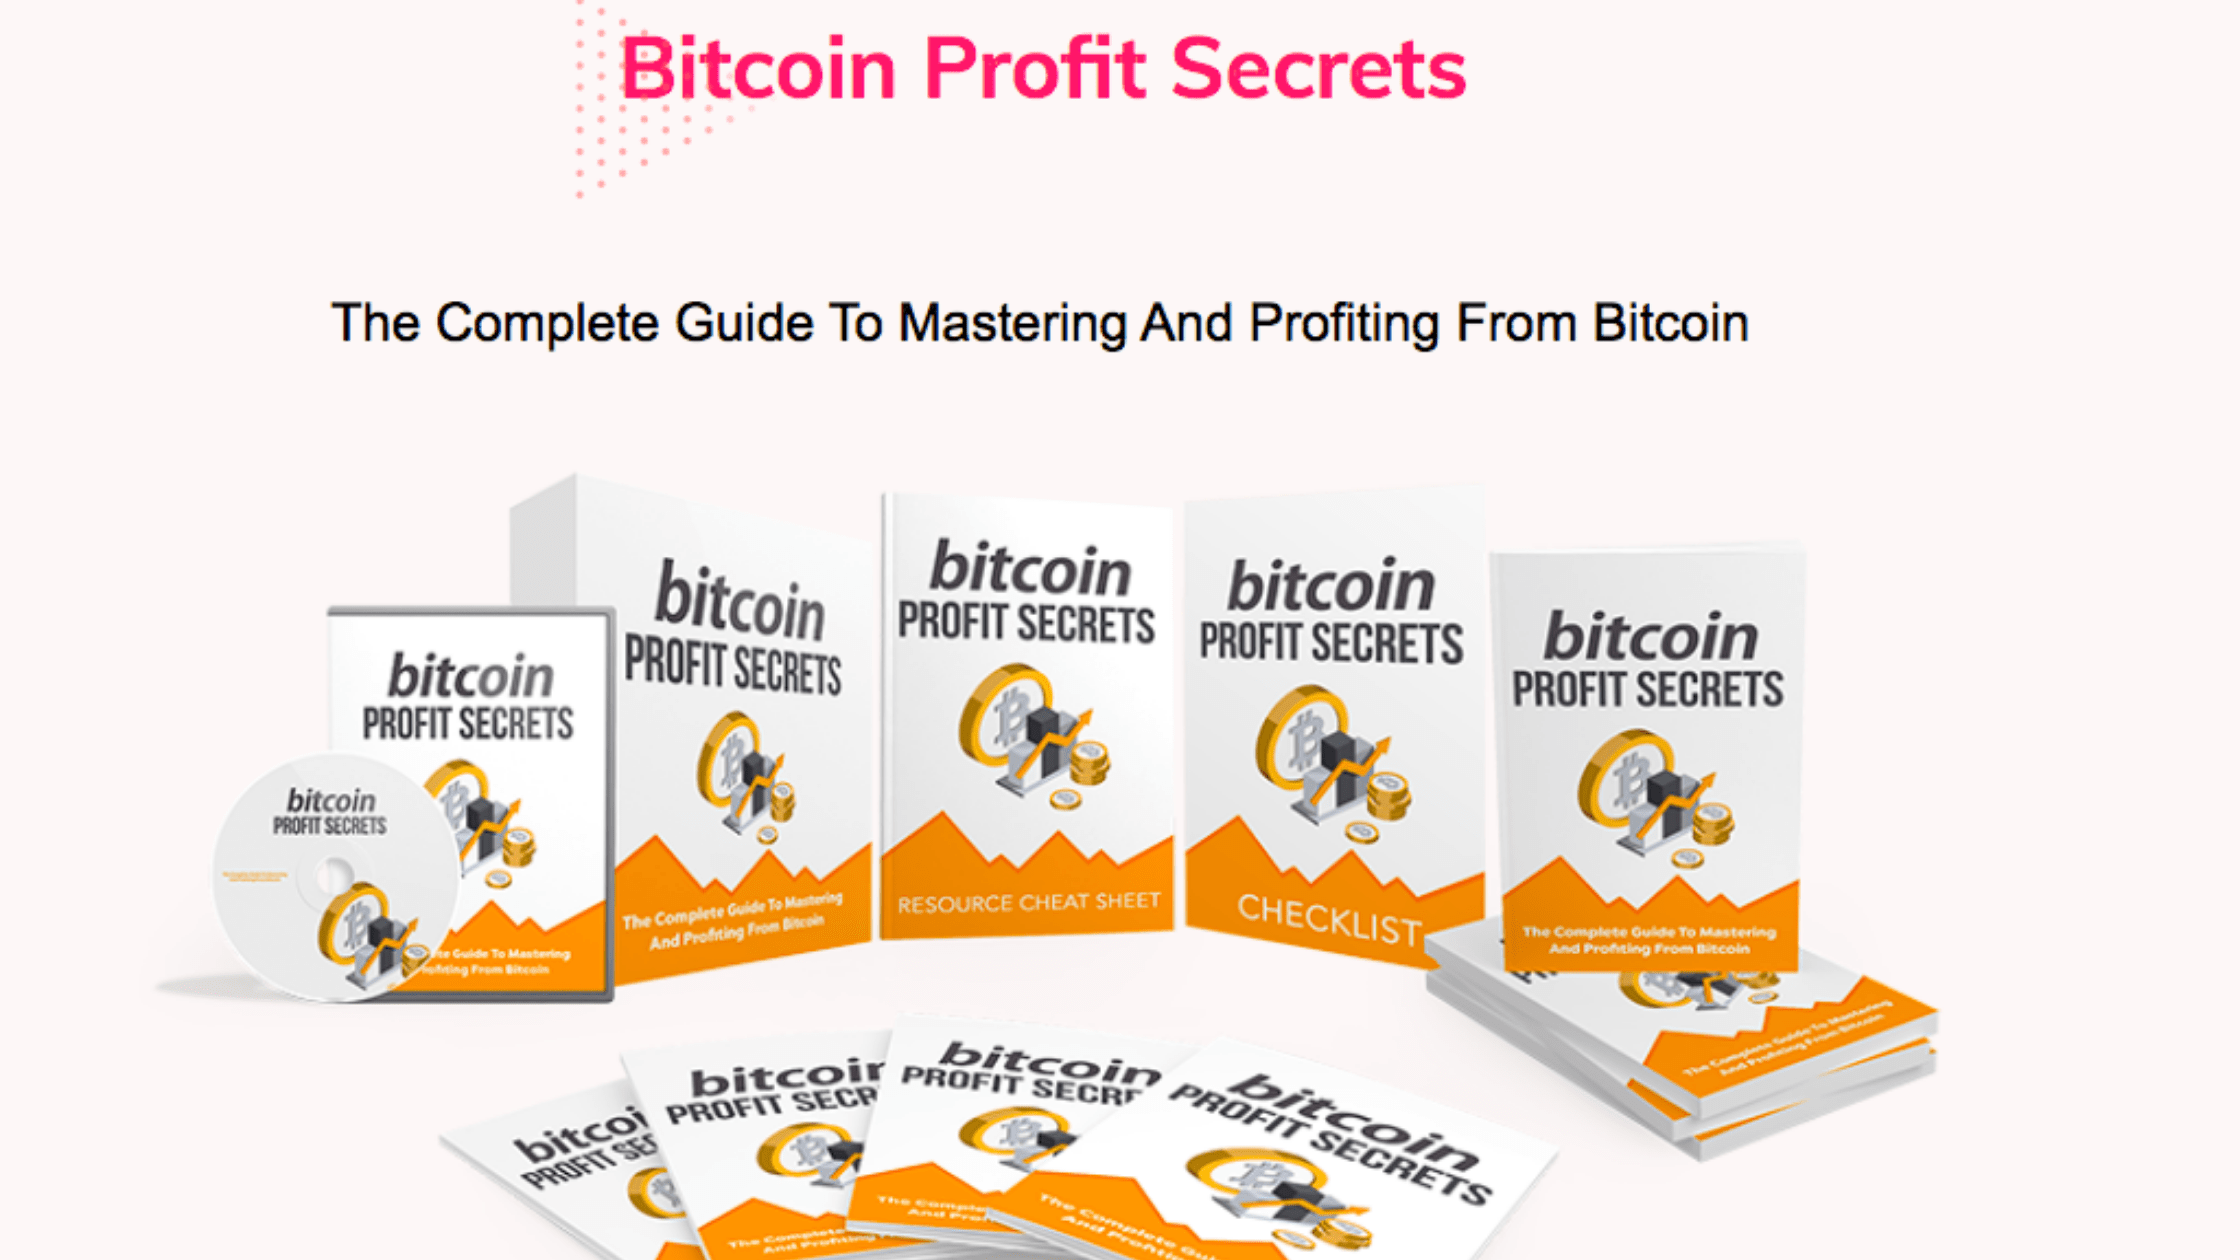 Bitcoin Profit Secrets Review